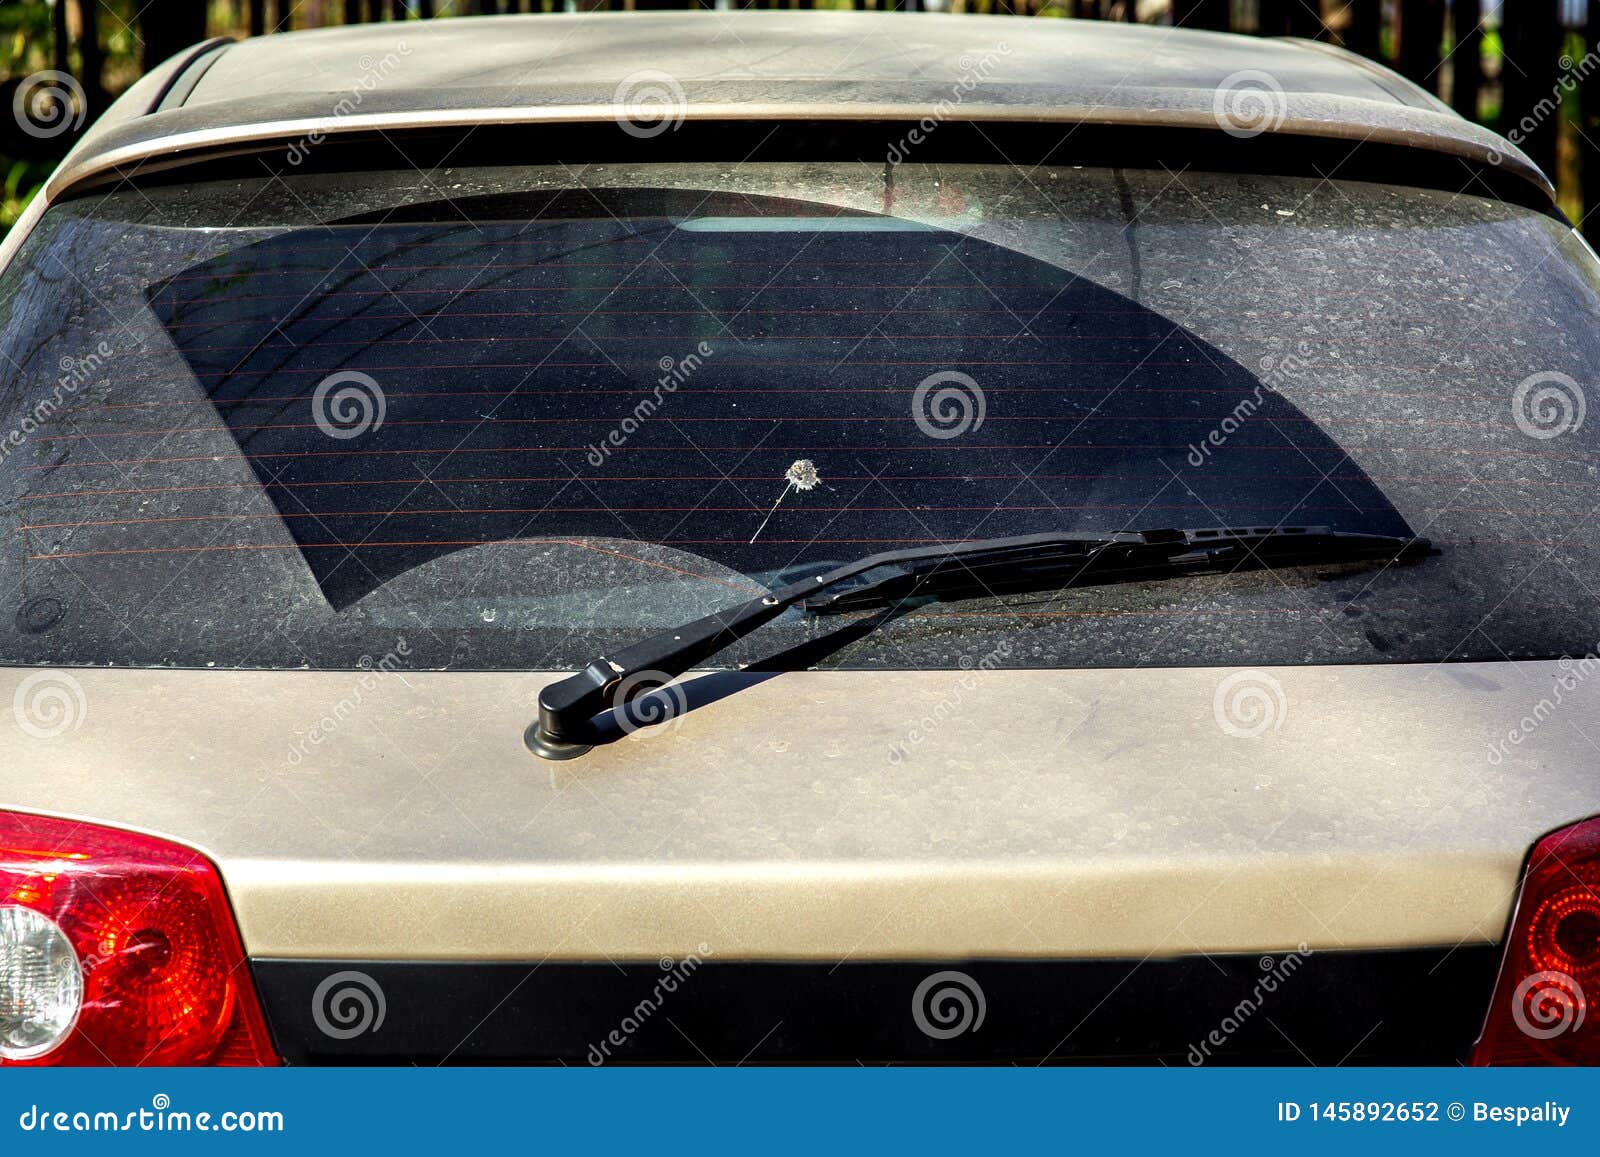 Heckscheibe Fließheck schmutziges Auto Rückansicht auf einem staubigen  Glas. Schmutzige und staubige Heckscheibe eines weißen oder grauen Autos.  Vergessen Sie nicht, Ihre Autos manuell oder in Autowaschanlagen zu waschen  21472978 Stock-Photo bei